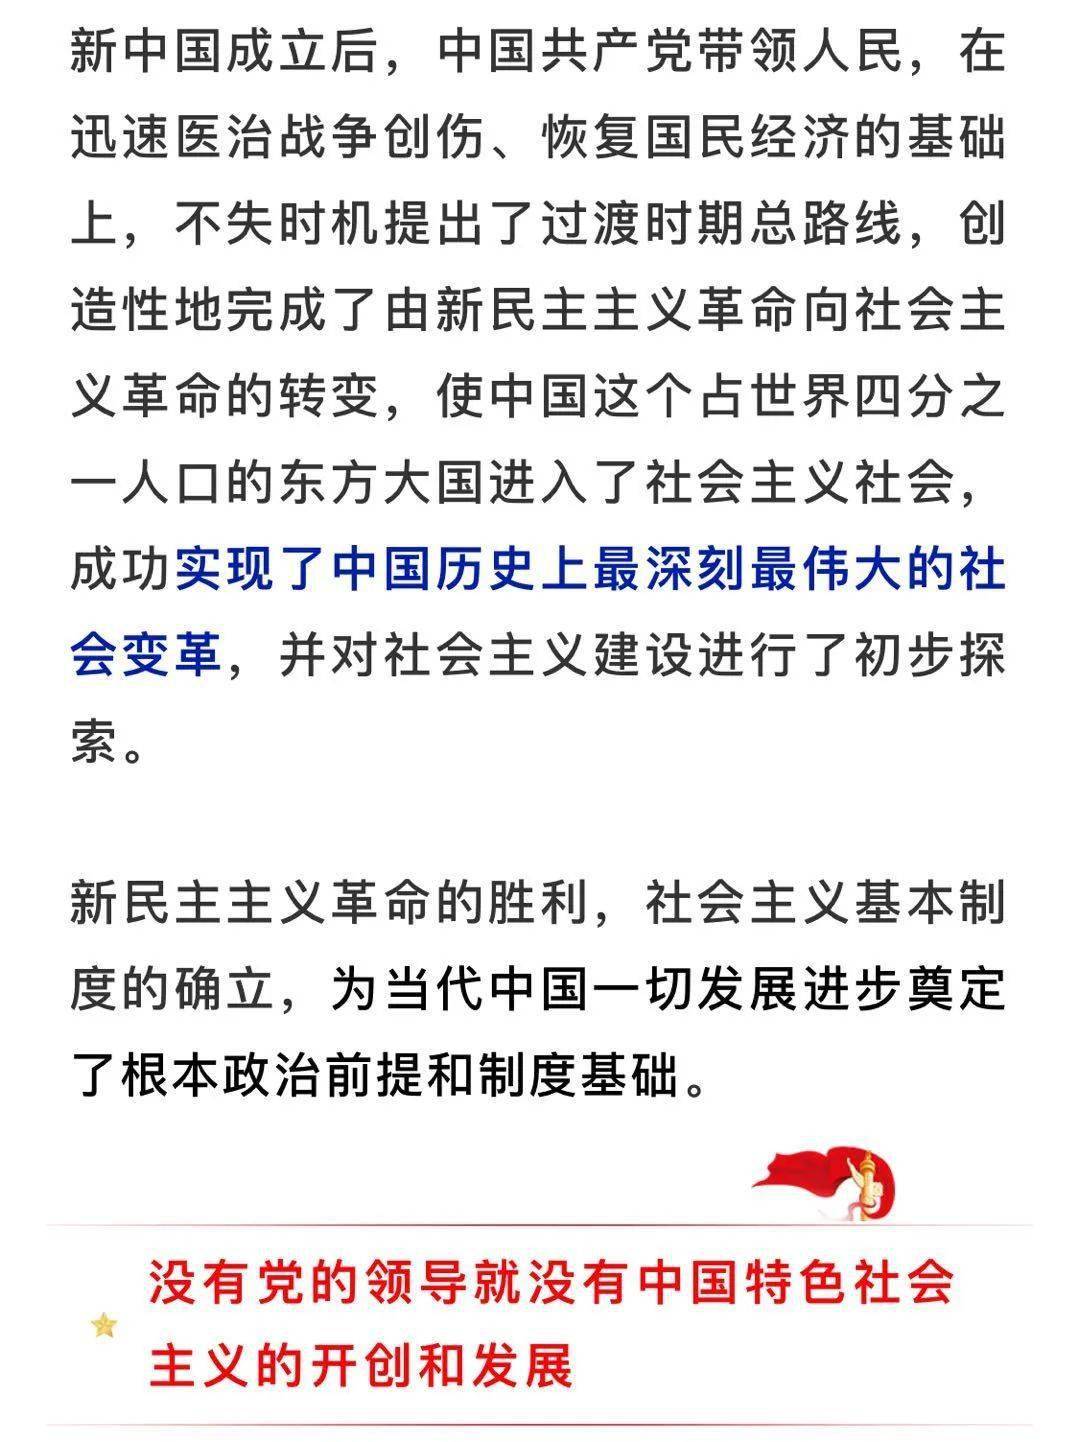 为什么说"中国共产党领导是中国特色社会主义最本质的